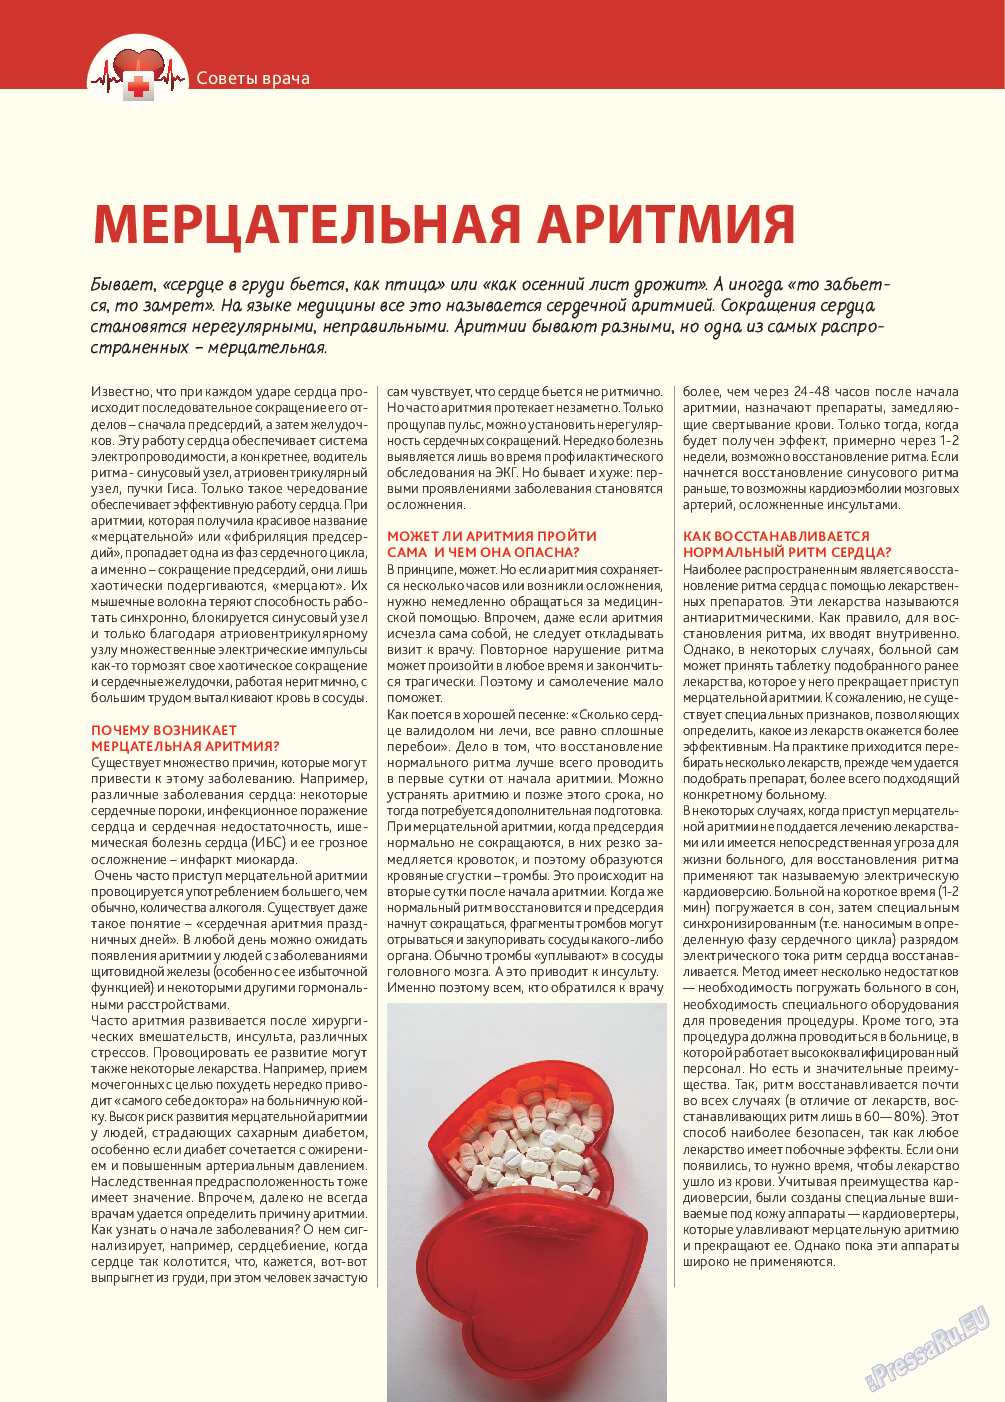 Афиша Augsburg (журнал). 2014 год, номер 4, стр. 10